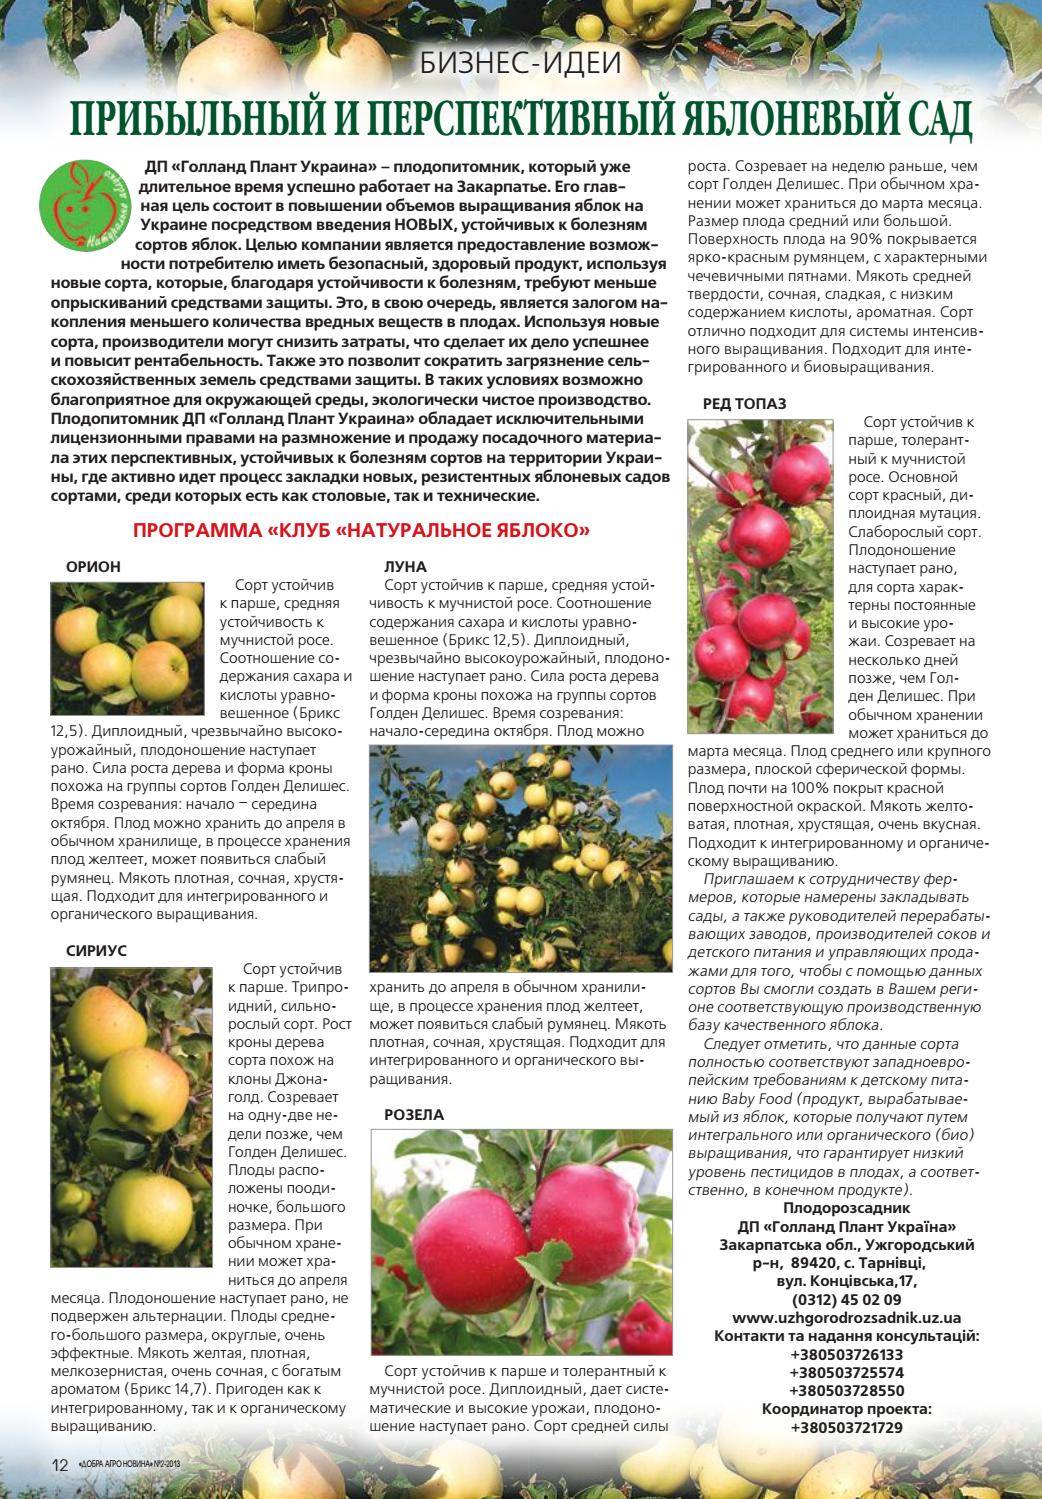 Яблоня ауксис: отзывы, описание, фото﻿